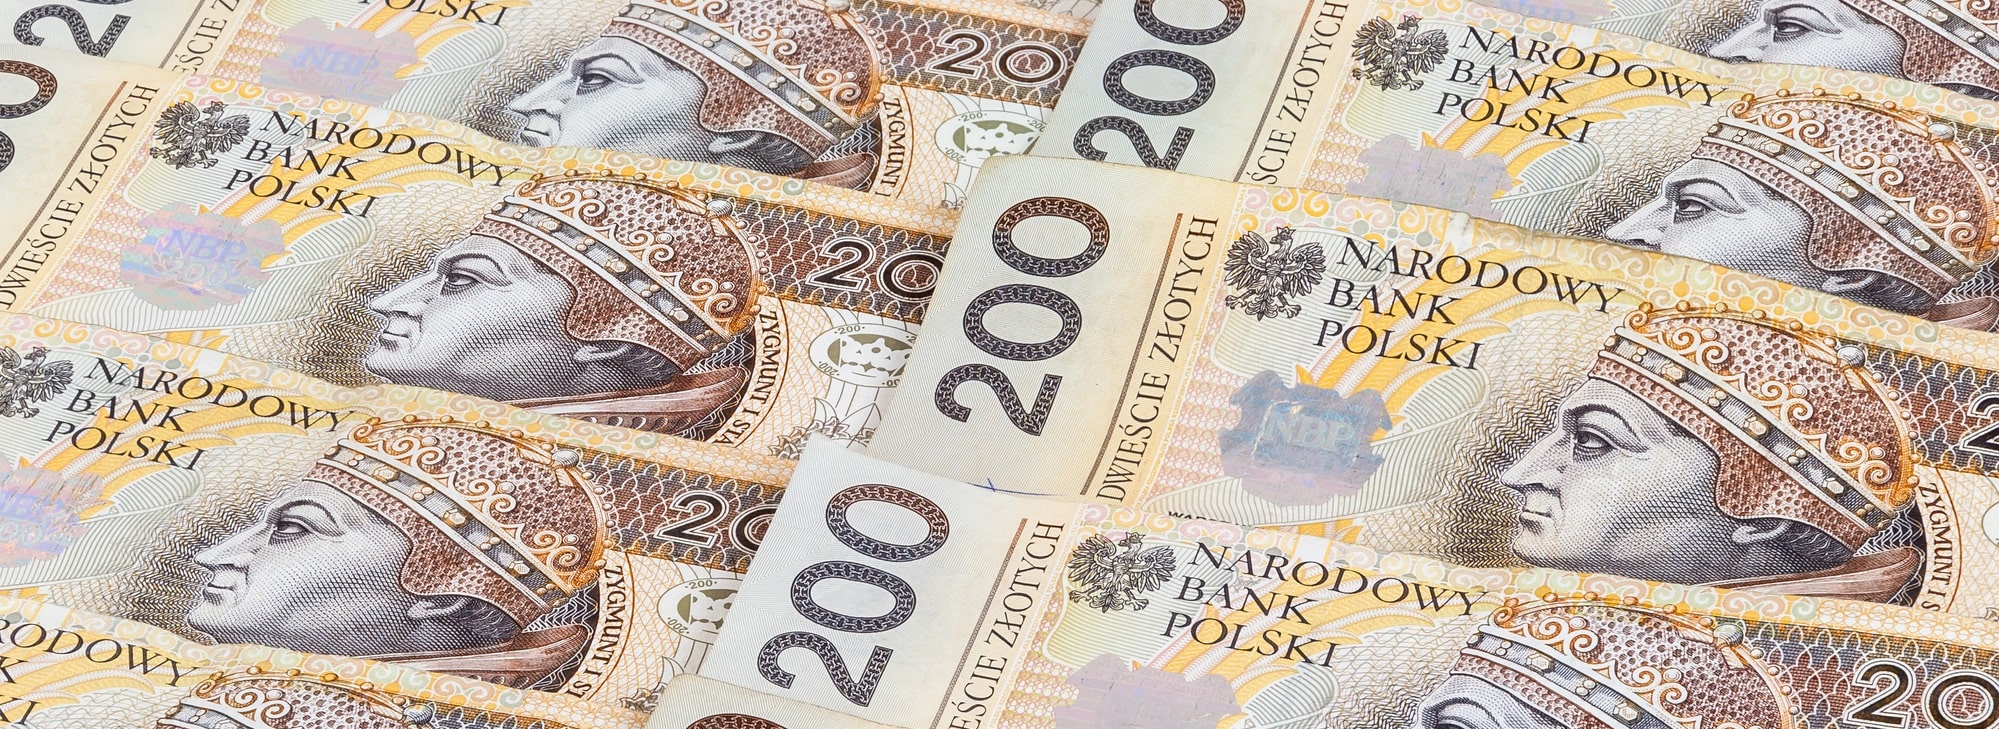 polskie-banknoty